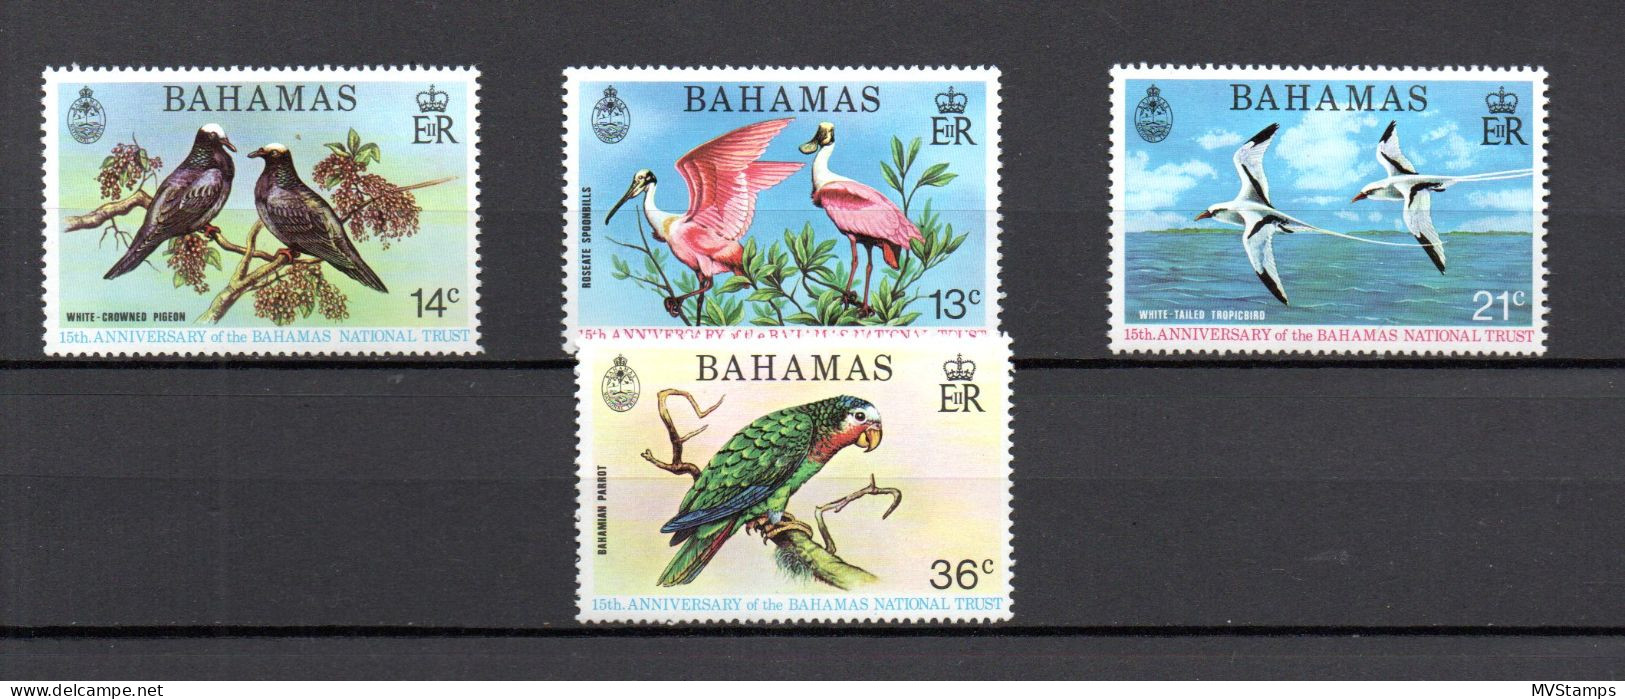 Bahamas 1974 Set Birds/Environment Stamps (Michel 370/73) MNH - Bahamas (1973-...)